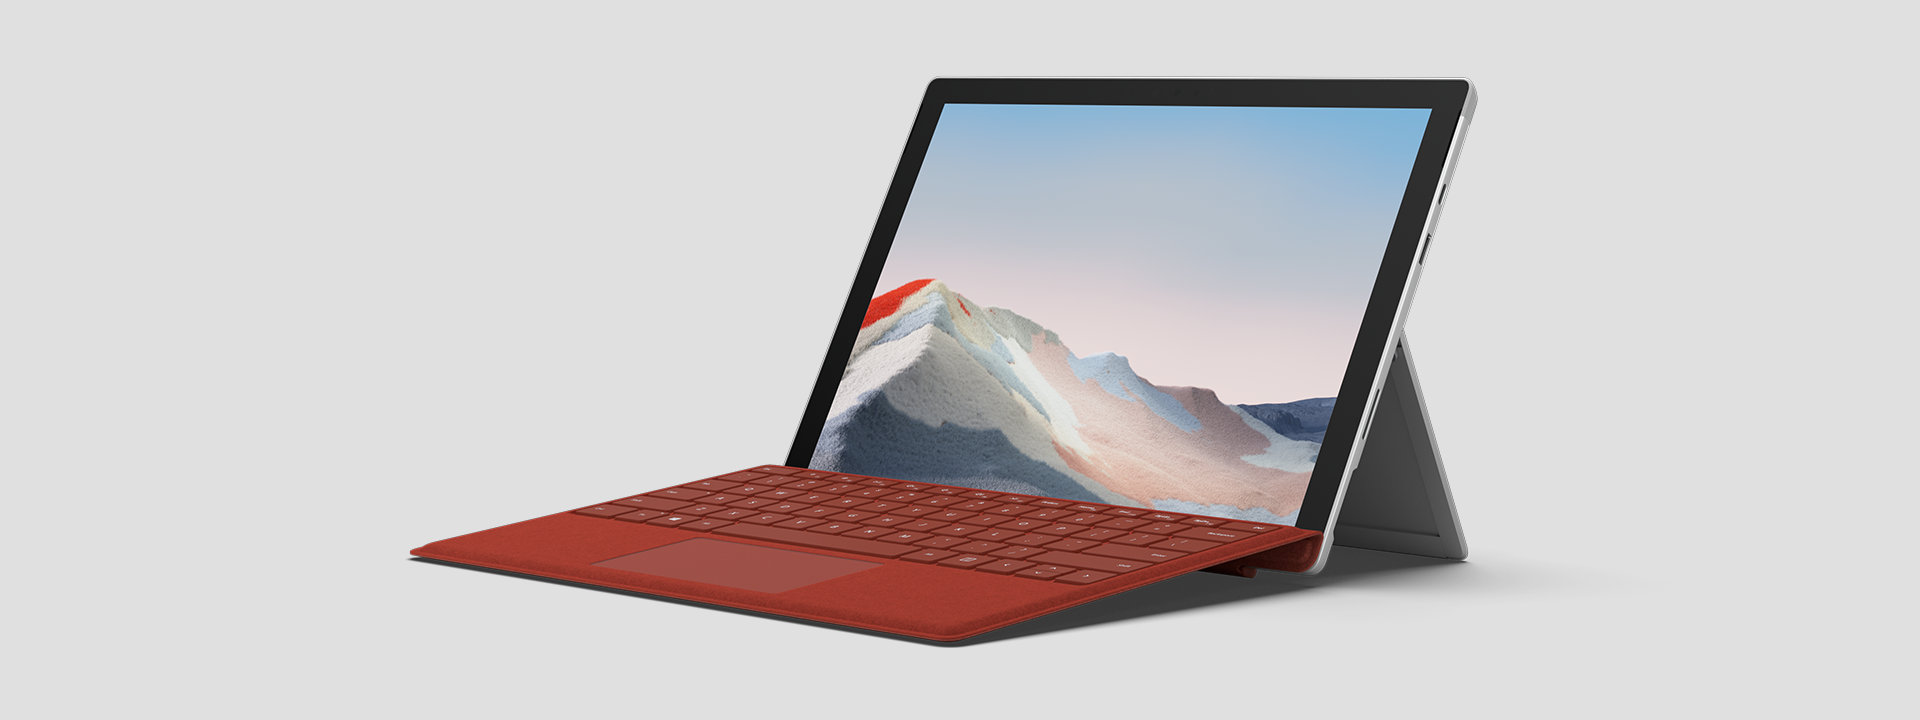 Surface Pro 7+ para empresas reposado sobre el soporte trasero y mostrando la pantalla y teclado.